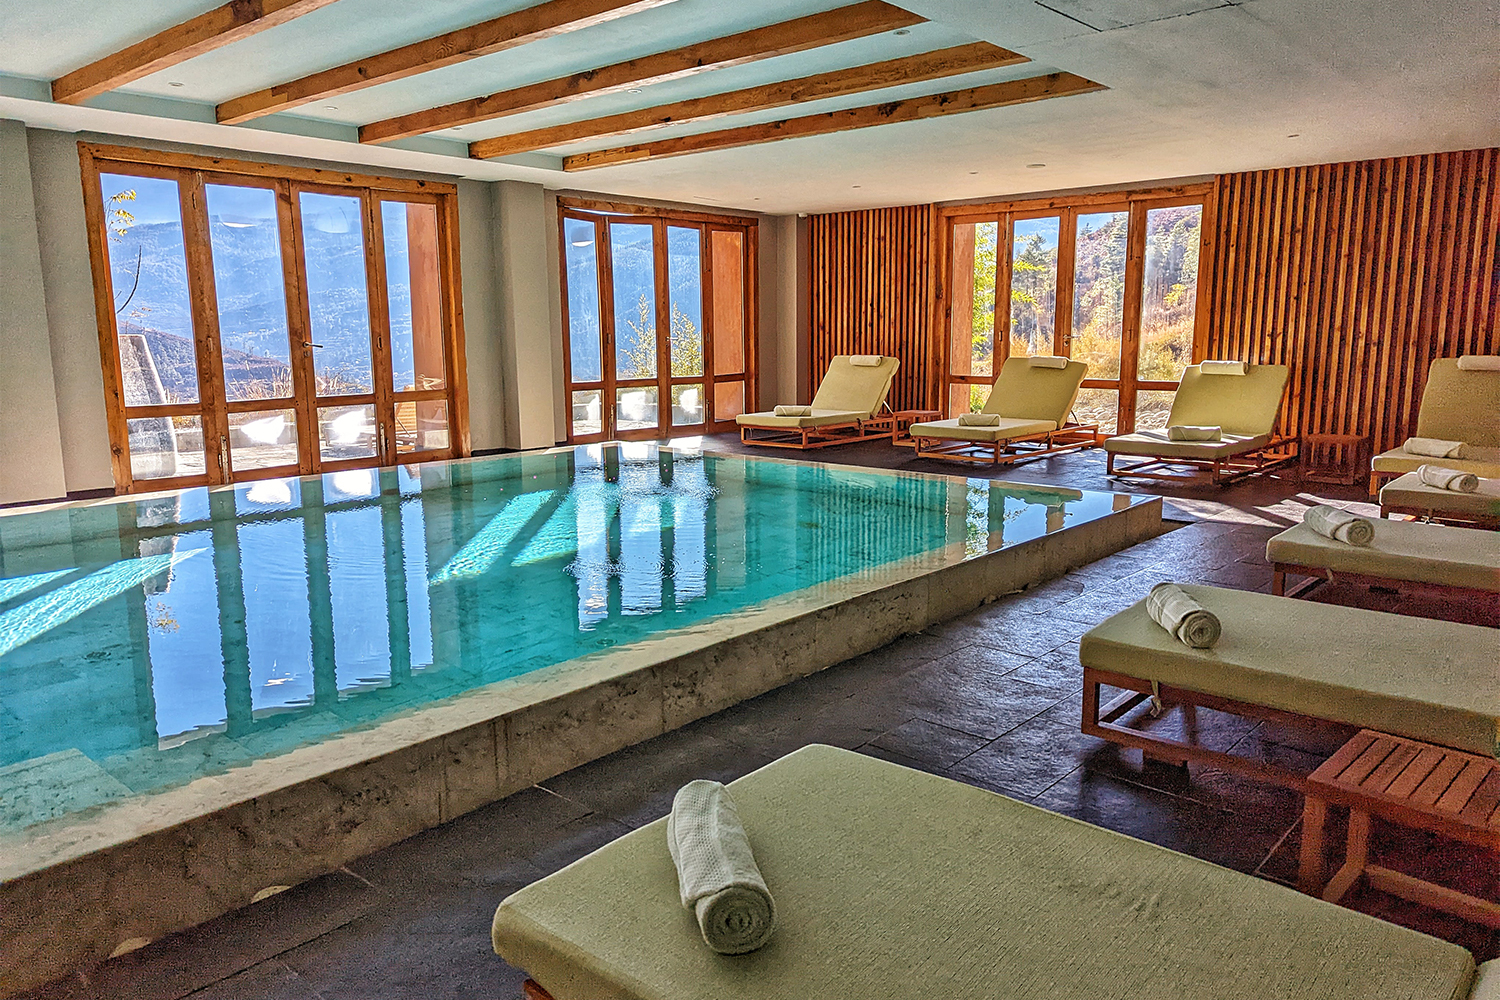 The indoor pool at Bhutan Spirit Sanctuary in Paro